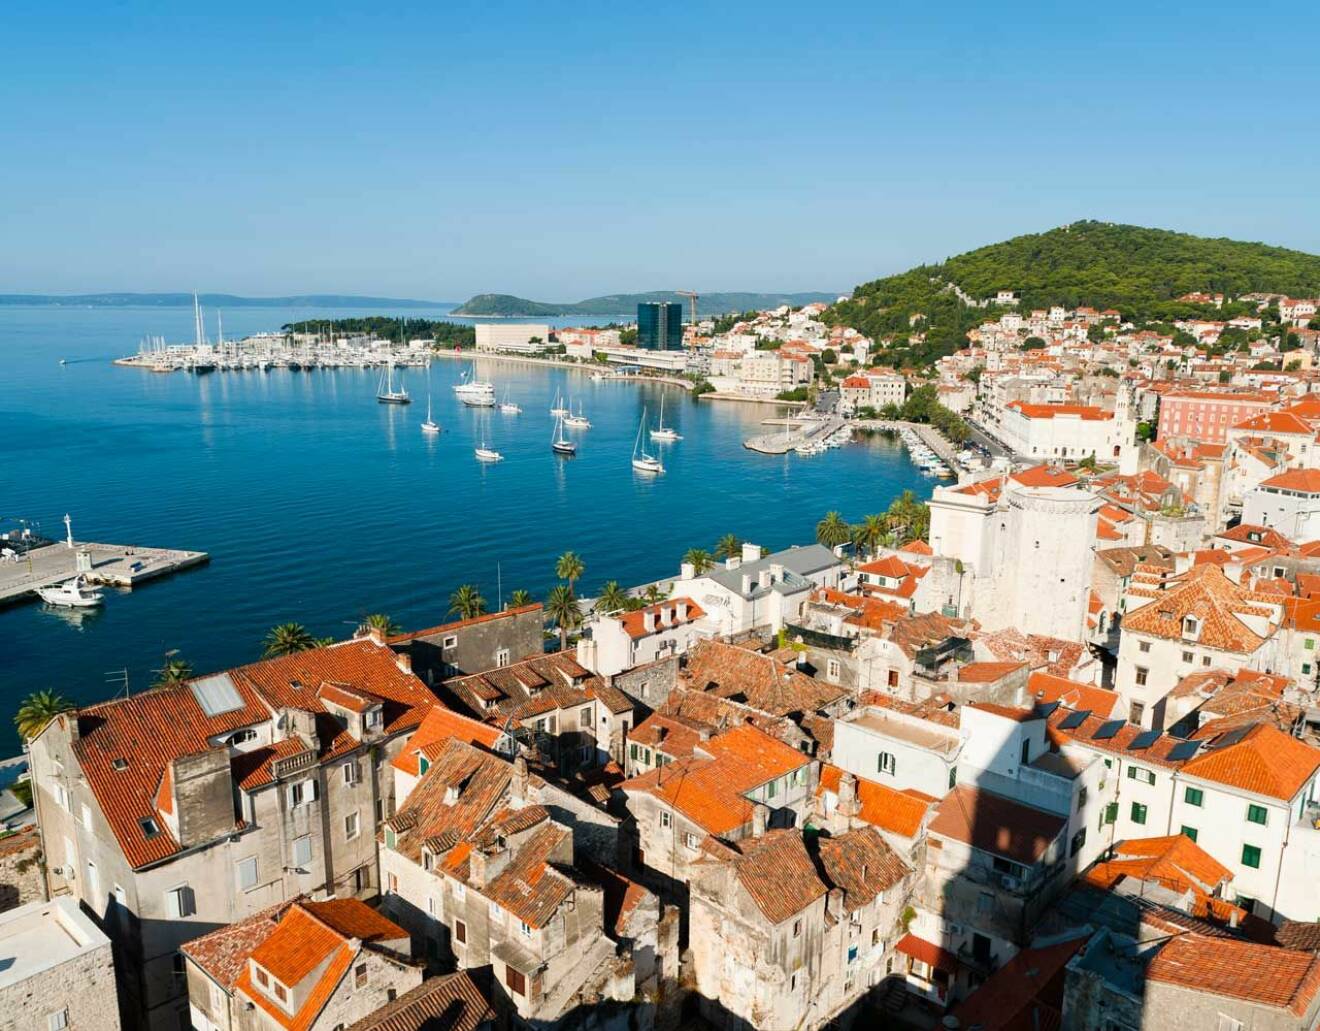  Split i Kroatien, på en halvö vid Adriatiska havet. Utanför ligger den kroatiska skärgården.